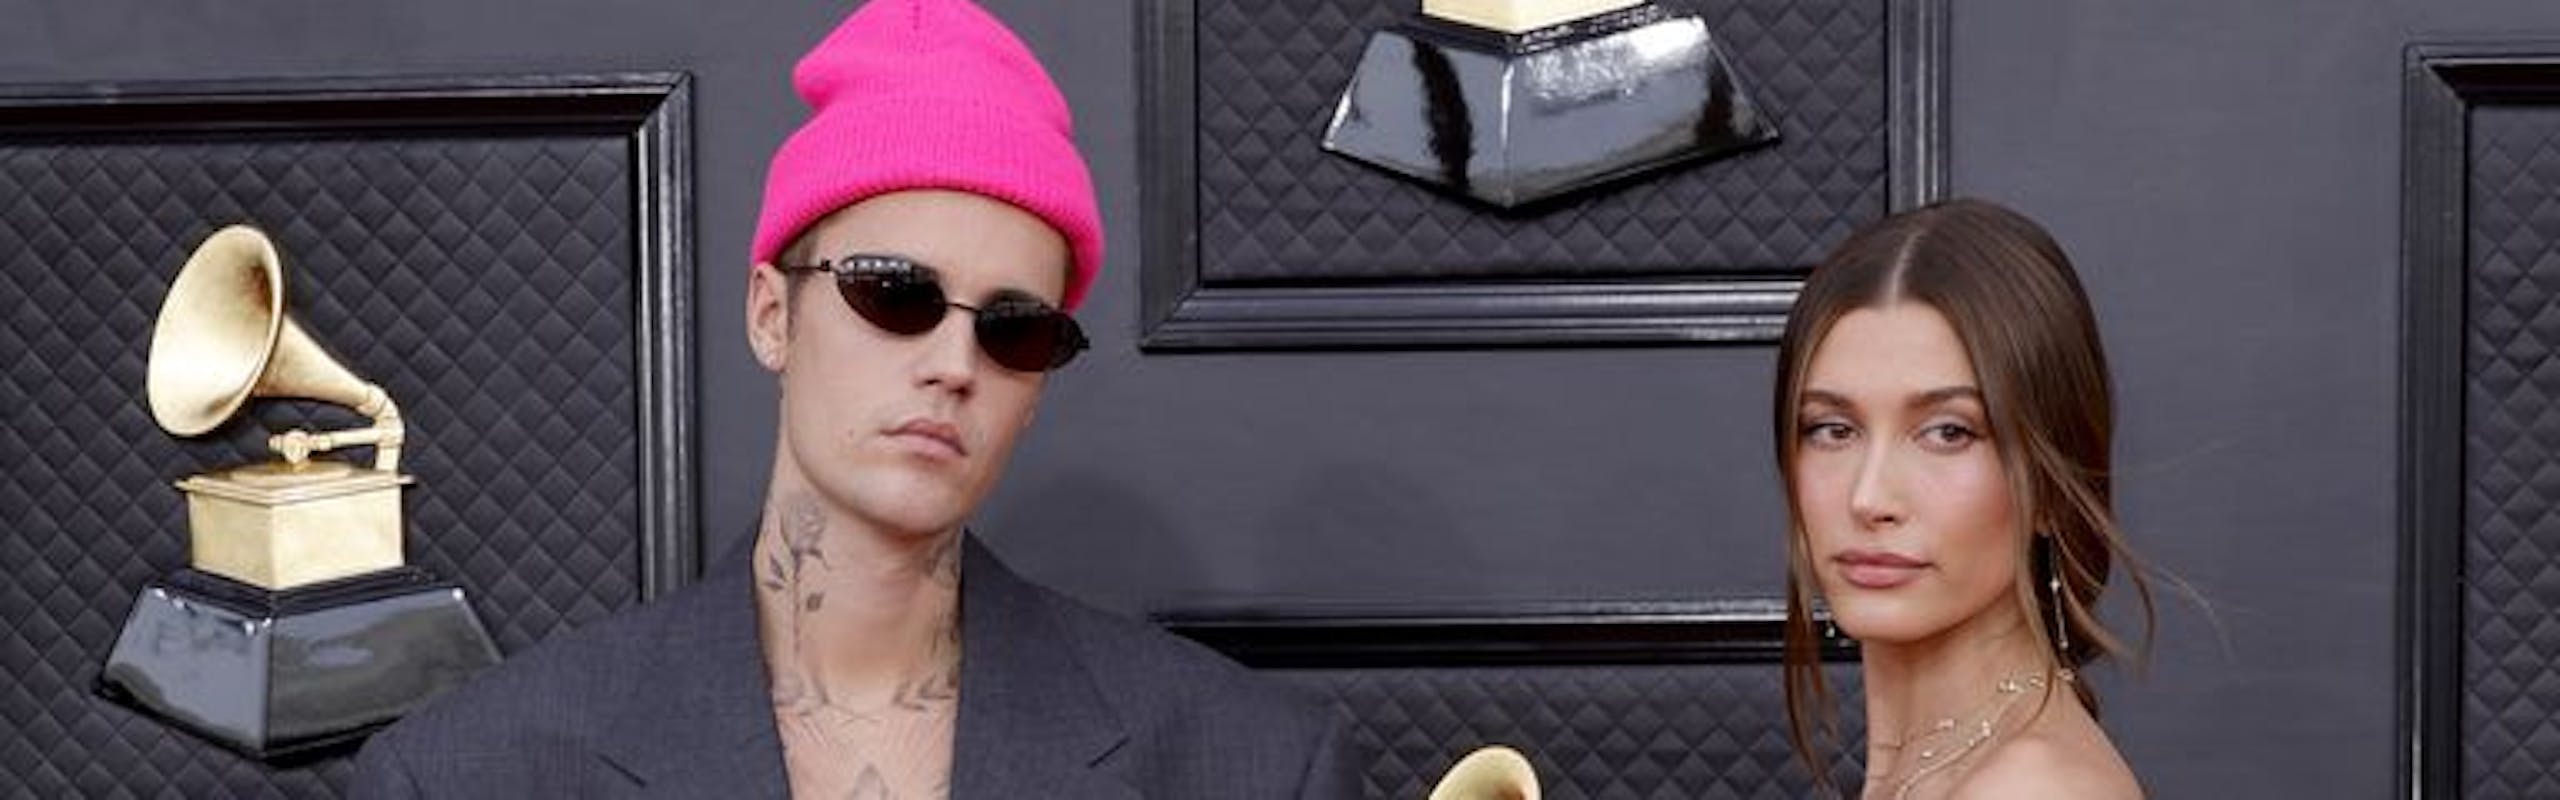 Justin Bieber insieme alla moglie Hailey Bieber sul red carpet dei Grammy's 2022 con le nuove Crocs in collaborazione con Balenciaga.